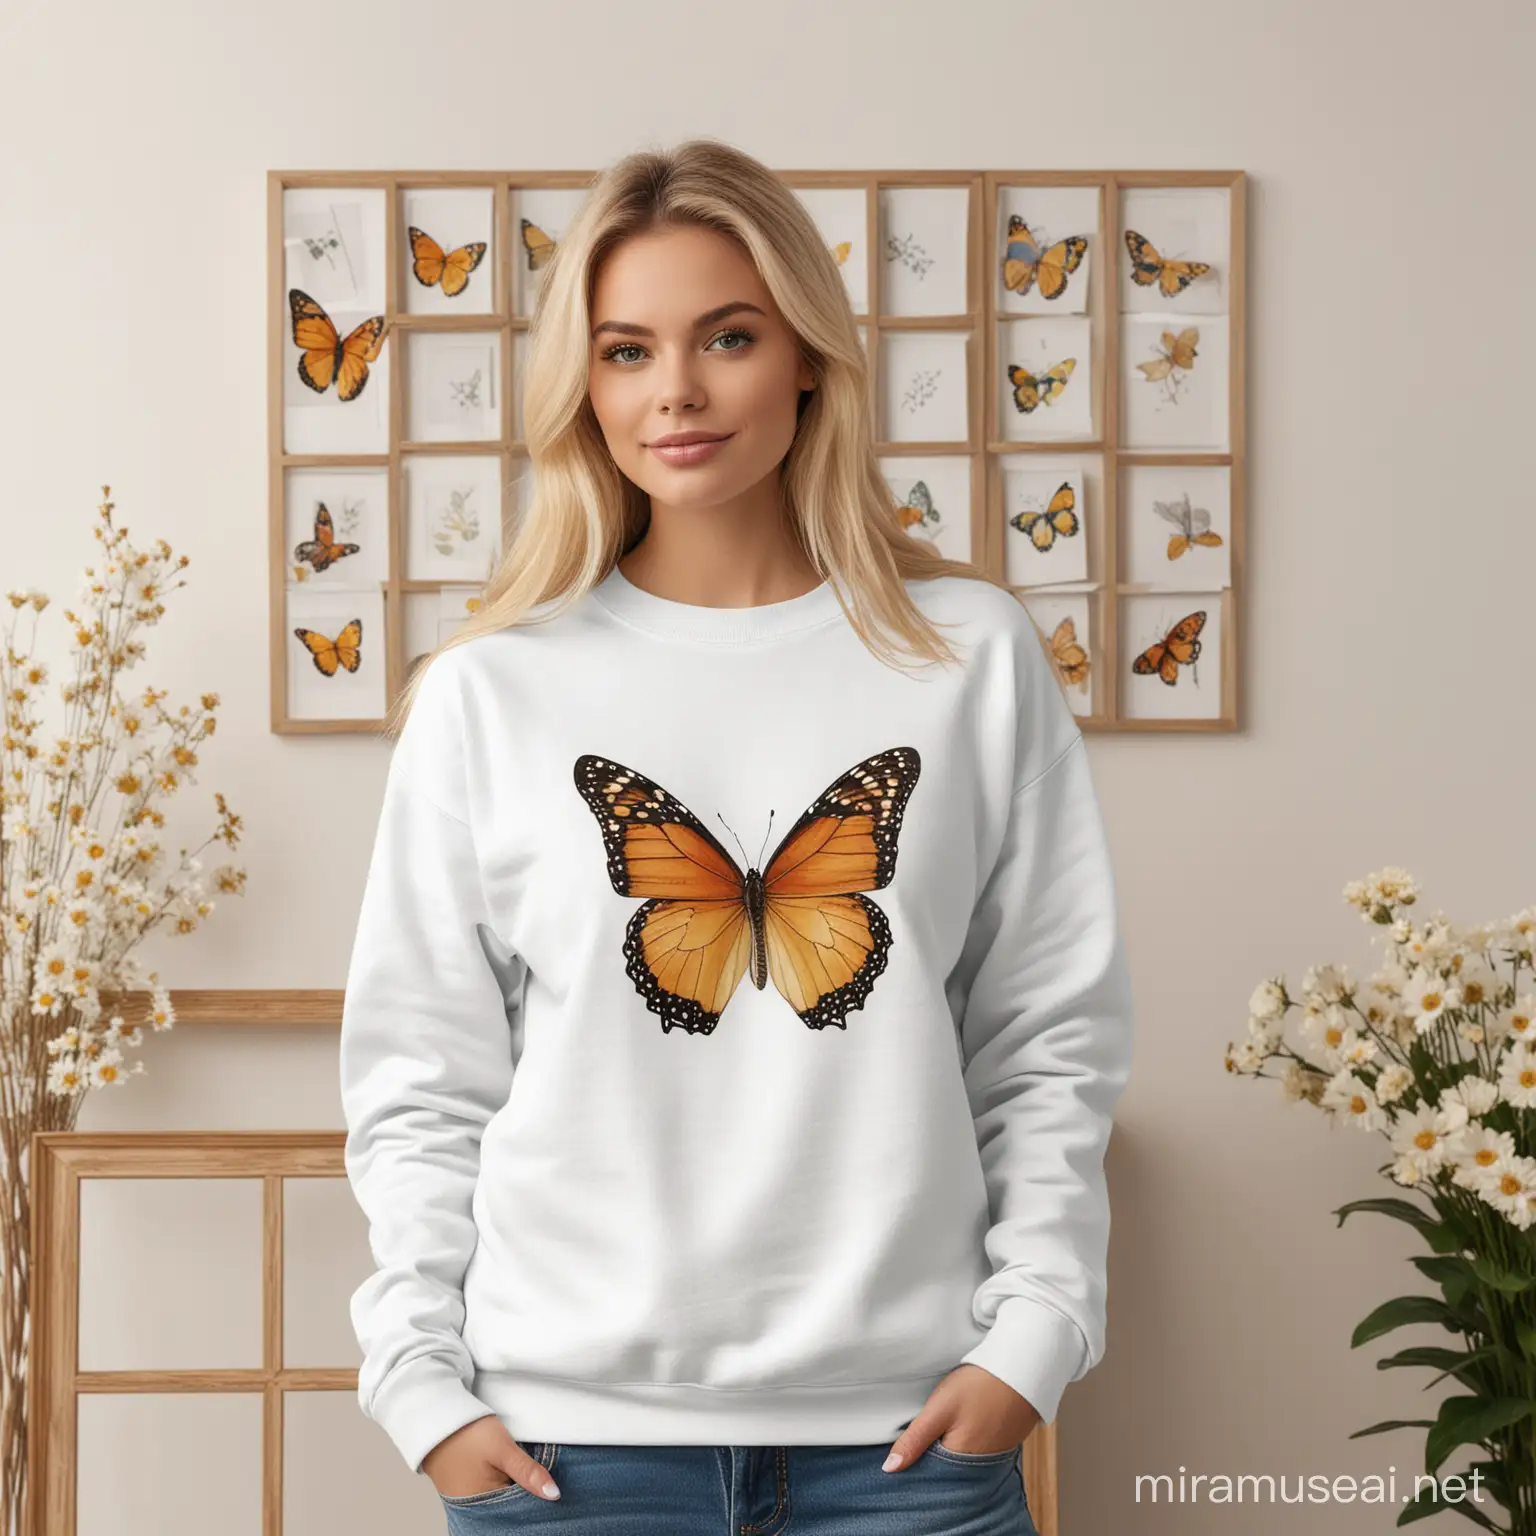 Blonde Woman in Blank White Sweatshirt with Butterfly Wall Art